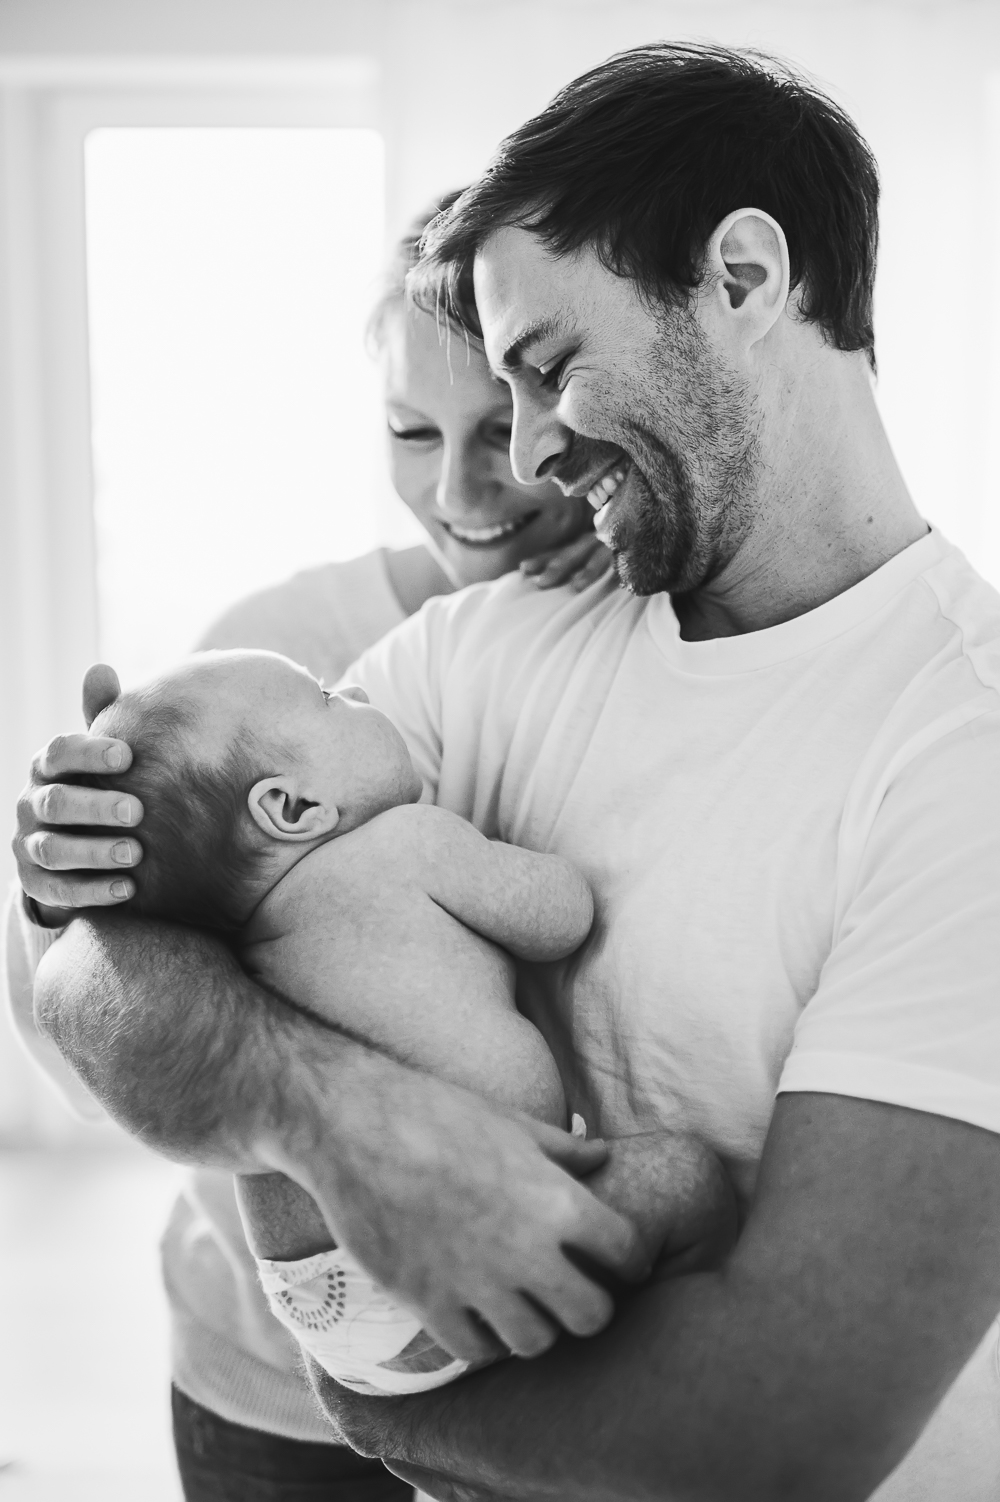 Ein berührendes Schwarz-Weiß-Porträt einer Familie, mit einer glücklichen Mutter und einem Vater, die ihr neugeborenes Baby liebevoll im Arm halten, während sie gemeinsam lachen.